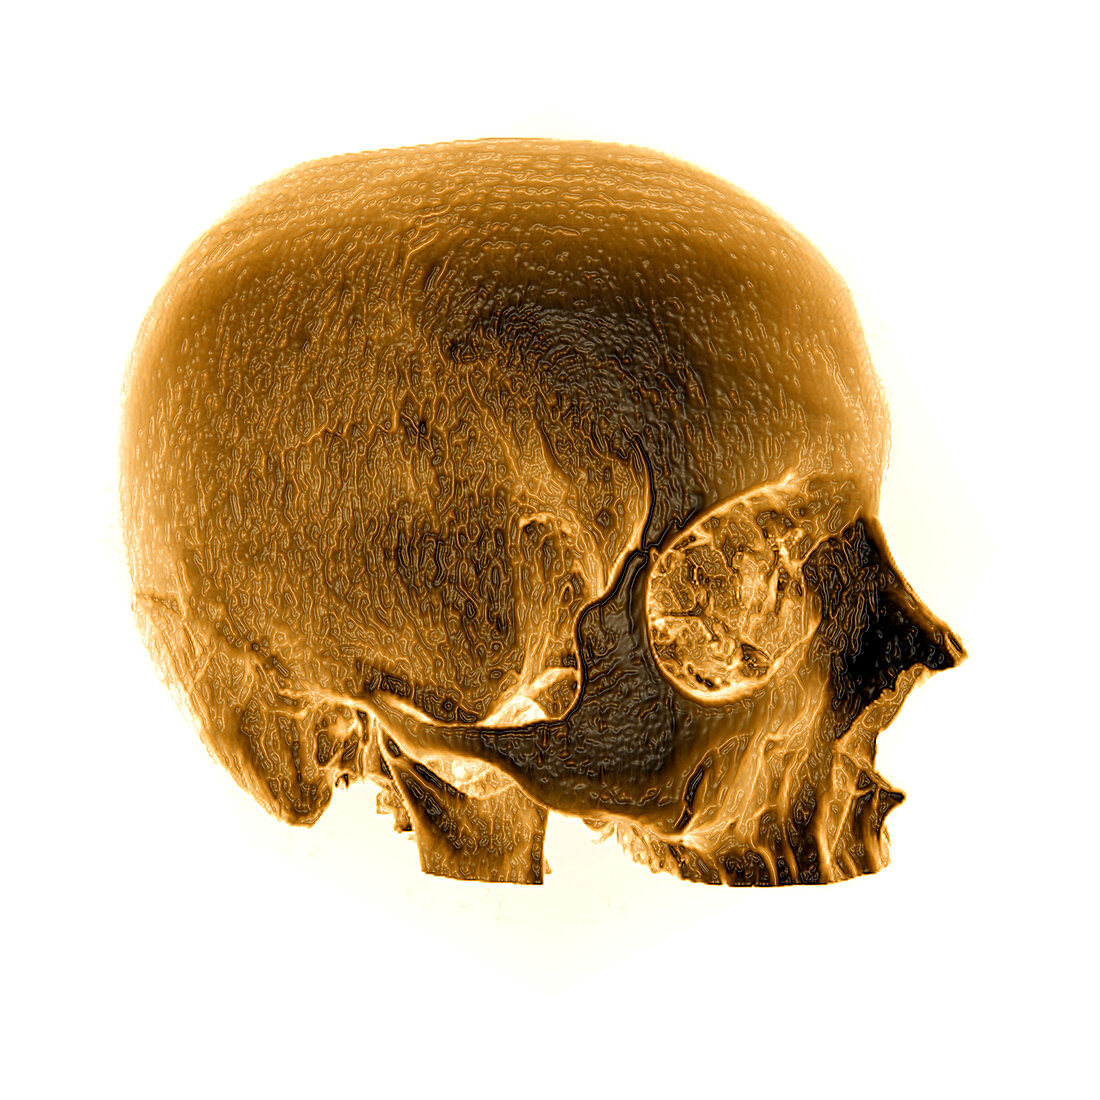 CT Reconstruction of Skull